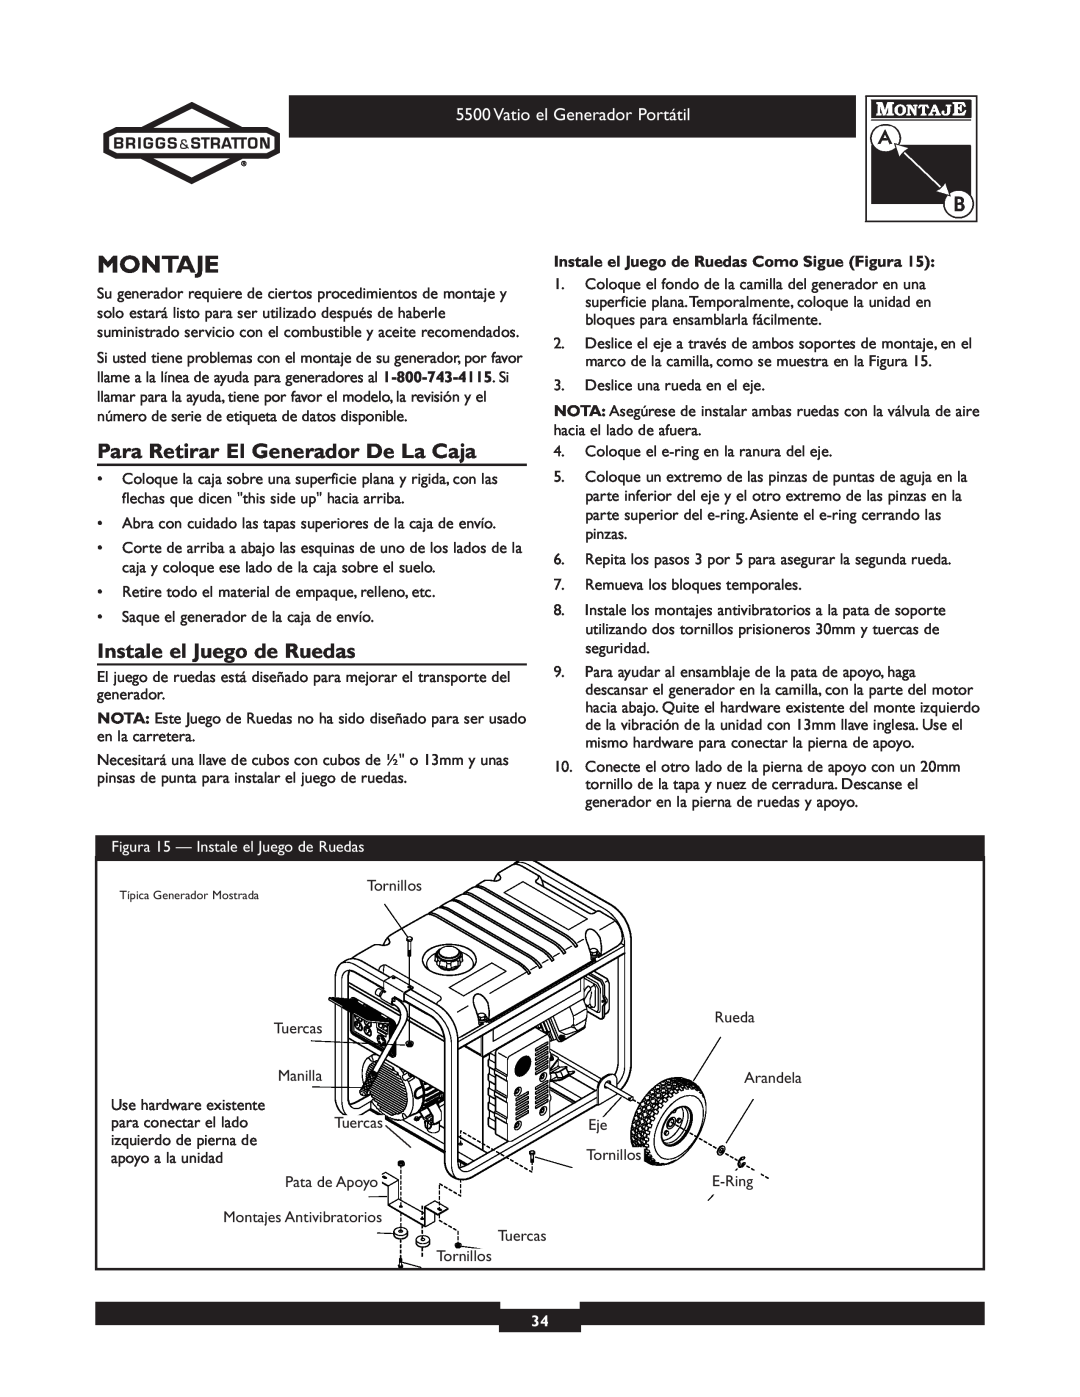 Briggs & Stratton 030206 owner manual Montaje, Para Retirar El Generador De La Caja, Instale el Juego de Ruedas 